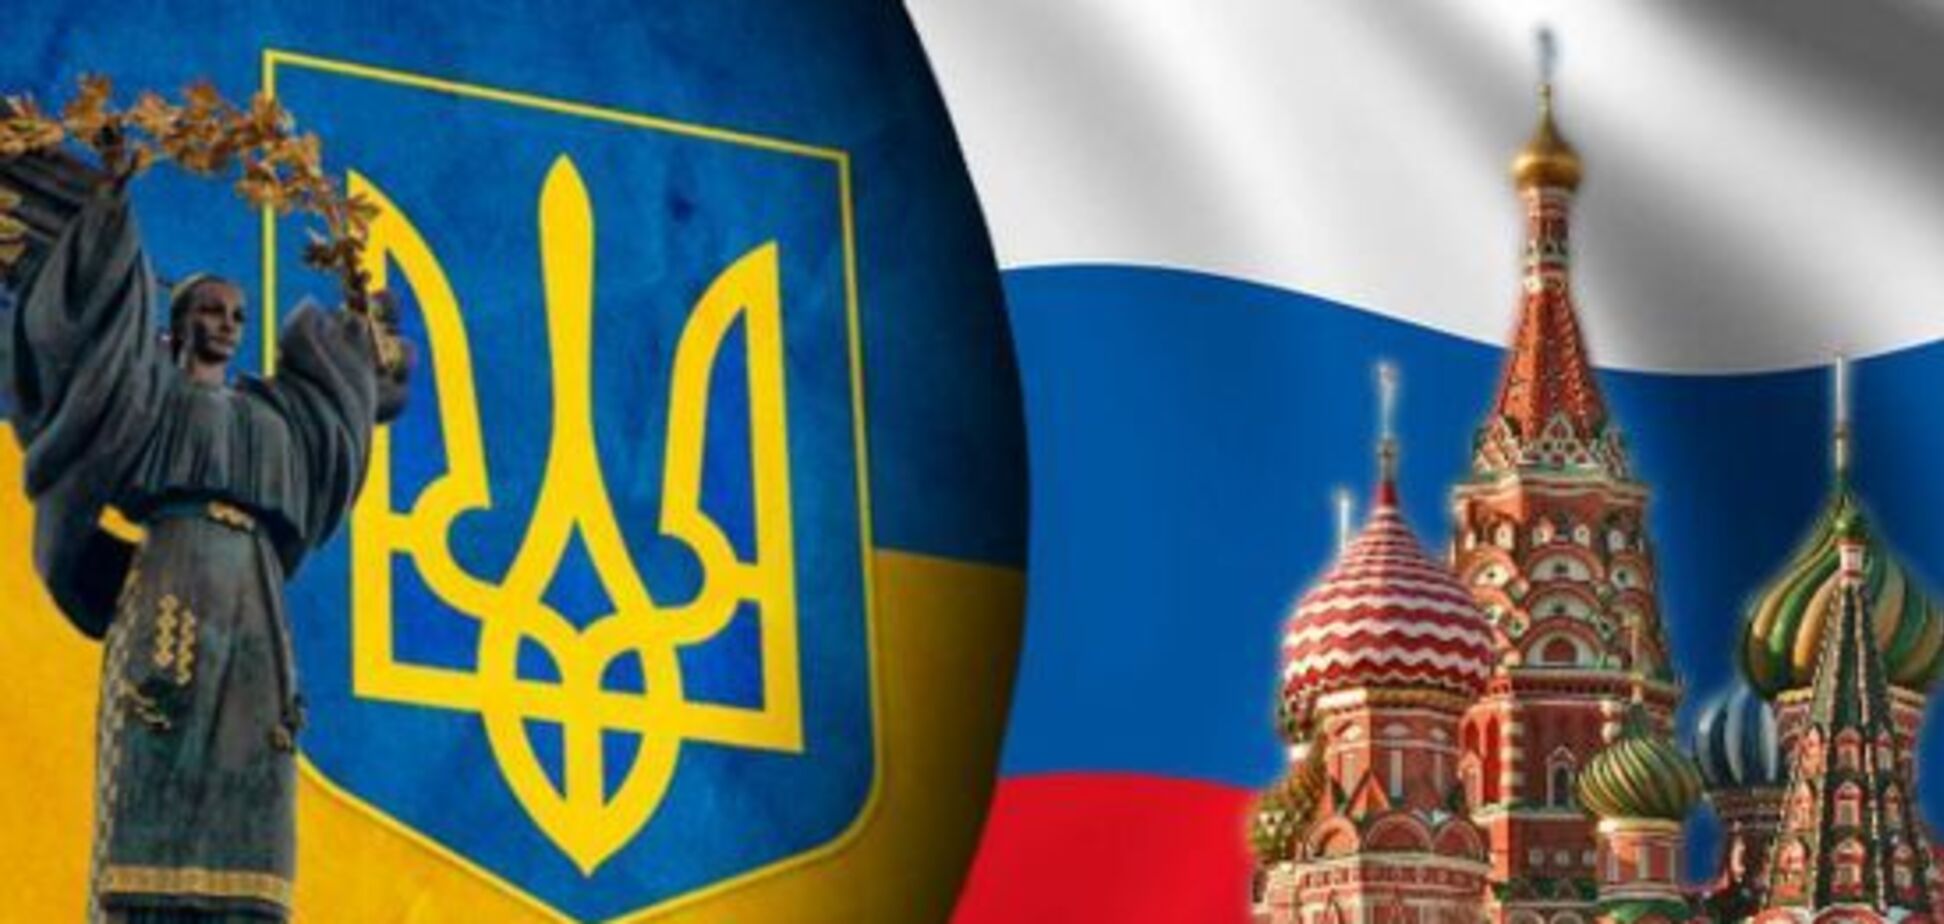 Ще один регіон України відмовився від російської мови